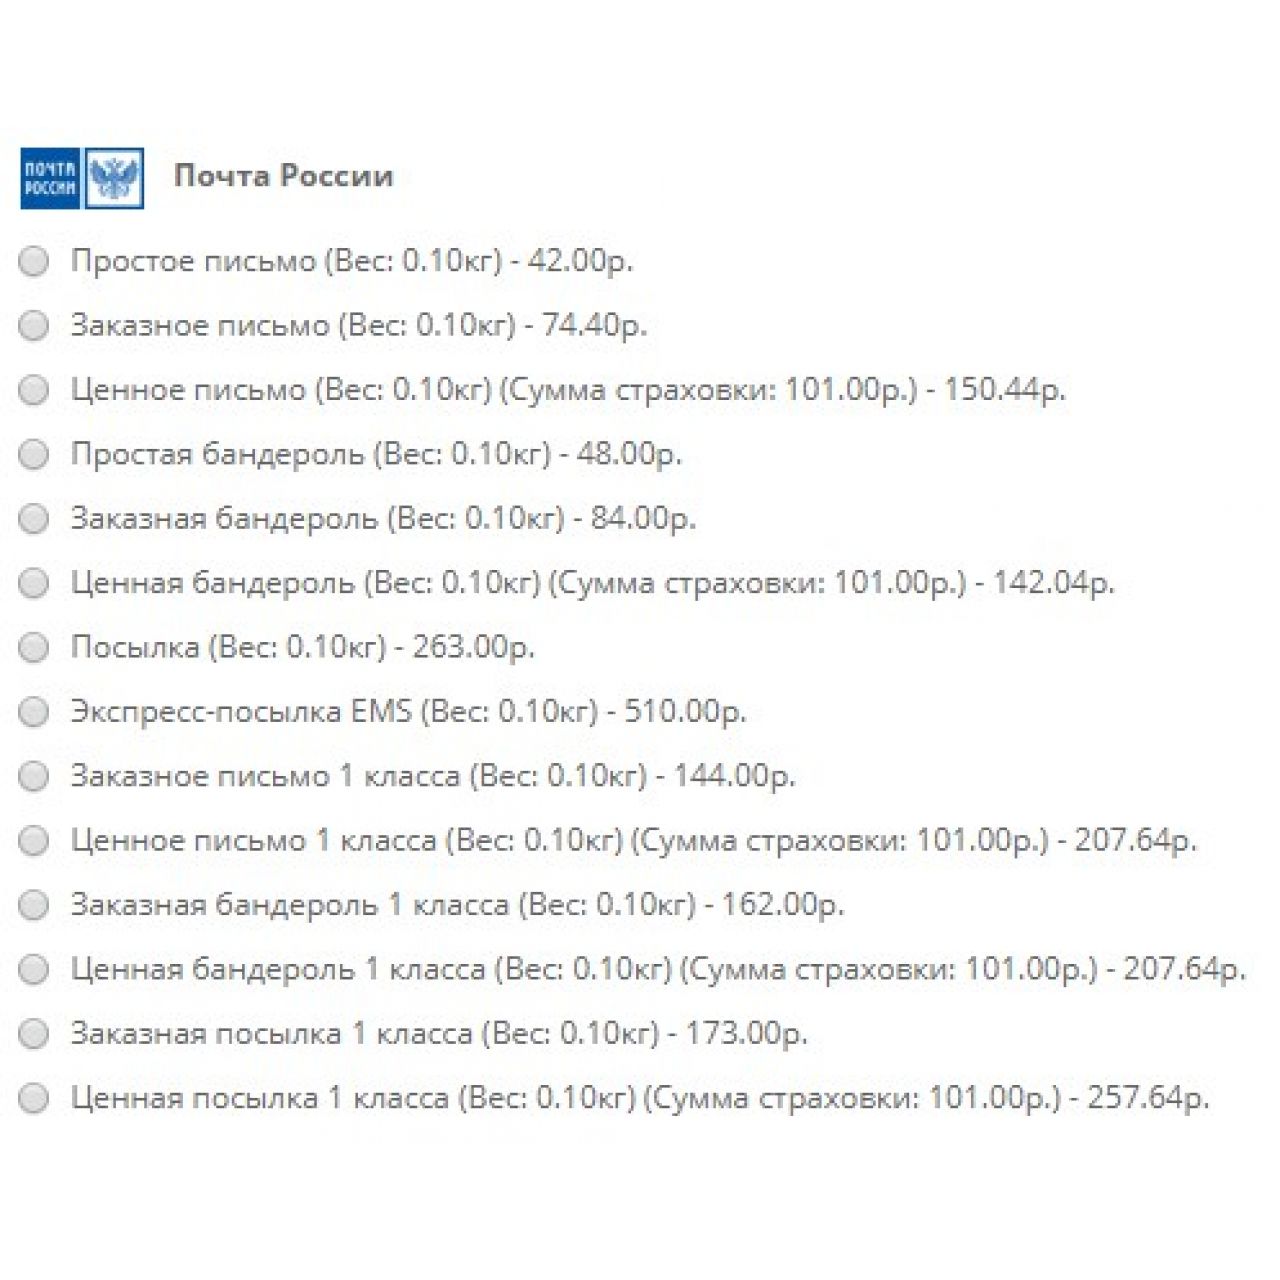 Доставка Почтой России из категории Доставка для CMS OpenCart (ОпенКарт)